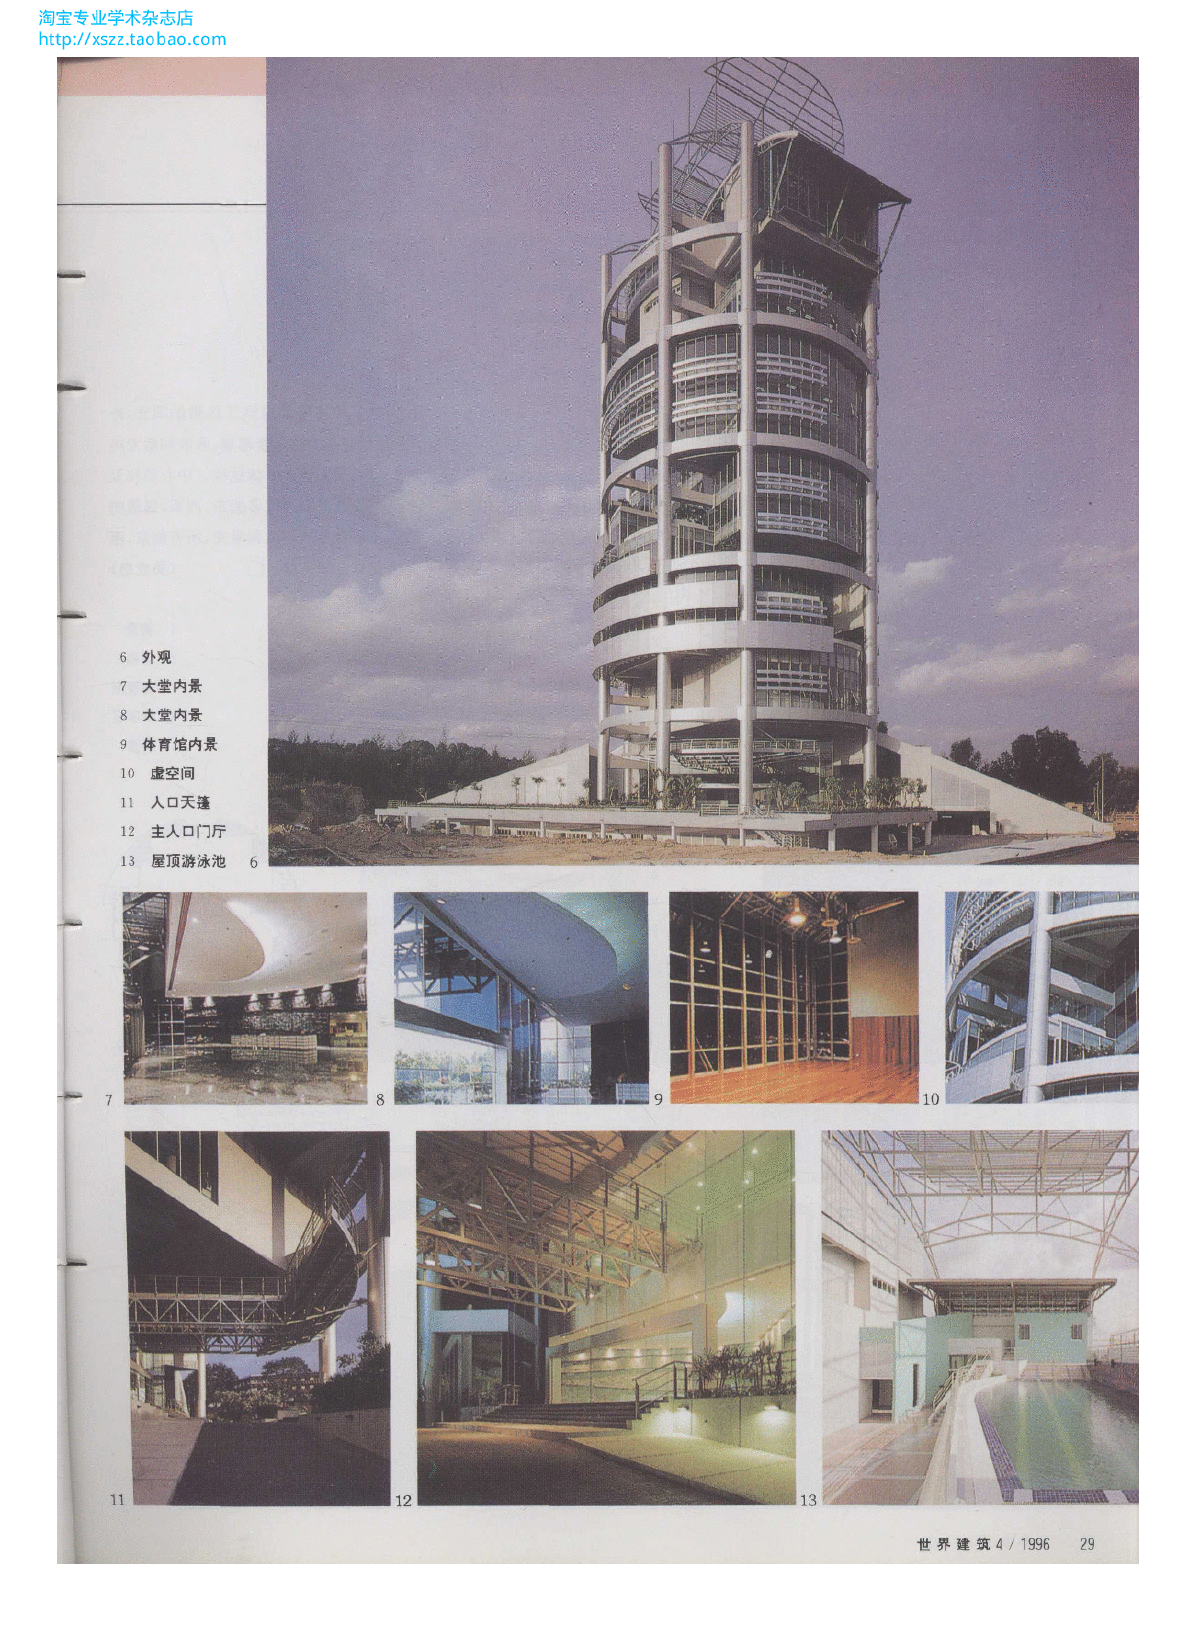 梅纳拉商厦,雪兰莪州,马来西亚-图二